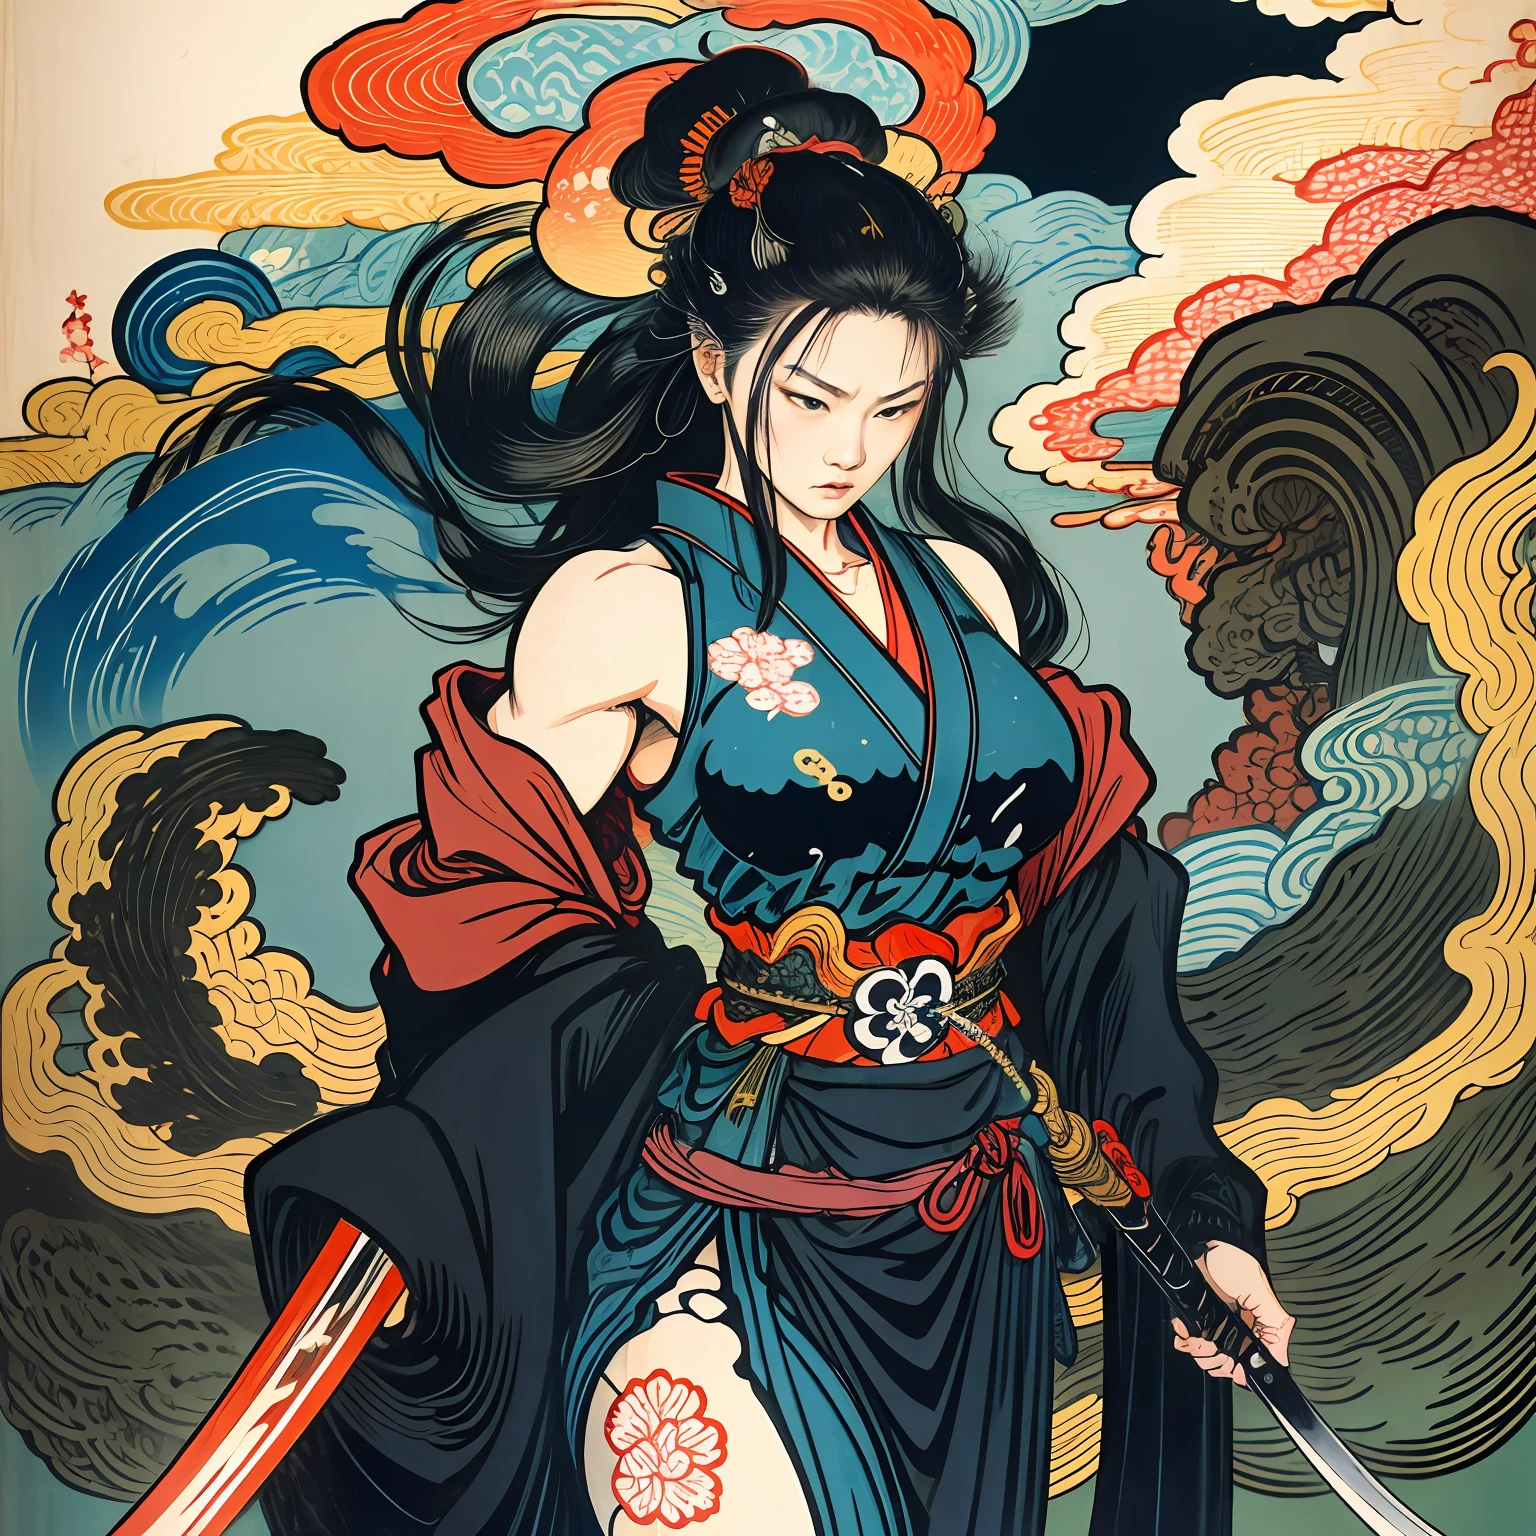 Es una pintura de cuerpo entero con colores naturales con dibujos lineales al estilo Katsushika Hokusai.. La espadachina es delgada y musculosa.. Mujer samurái de Japón. Con una expresión de determinación digna pero femenina., ella se enfrenta a los espíritus malignos. ella tiene el pelo largo y negro. La parte superior de su cuerpo está cubierta con un kimono negro y su hakama llega hasta las rodillas.. En su mano derecha sostiene una espada japonesa con una parte más larga.. en la más alta calidad, obra maestra de alta resolución estilo ukiyo-e relámpagos y llamas arremolinadas. Entre ellos, la guerrera samurai está parada con la espalda recta, mirando al frente.